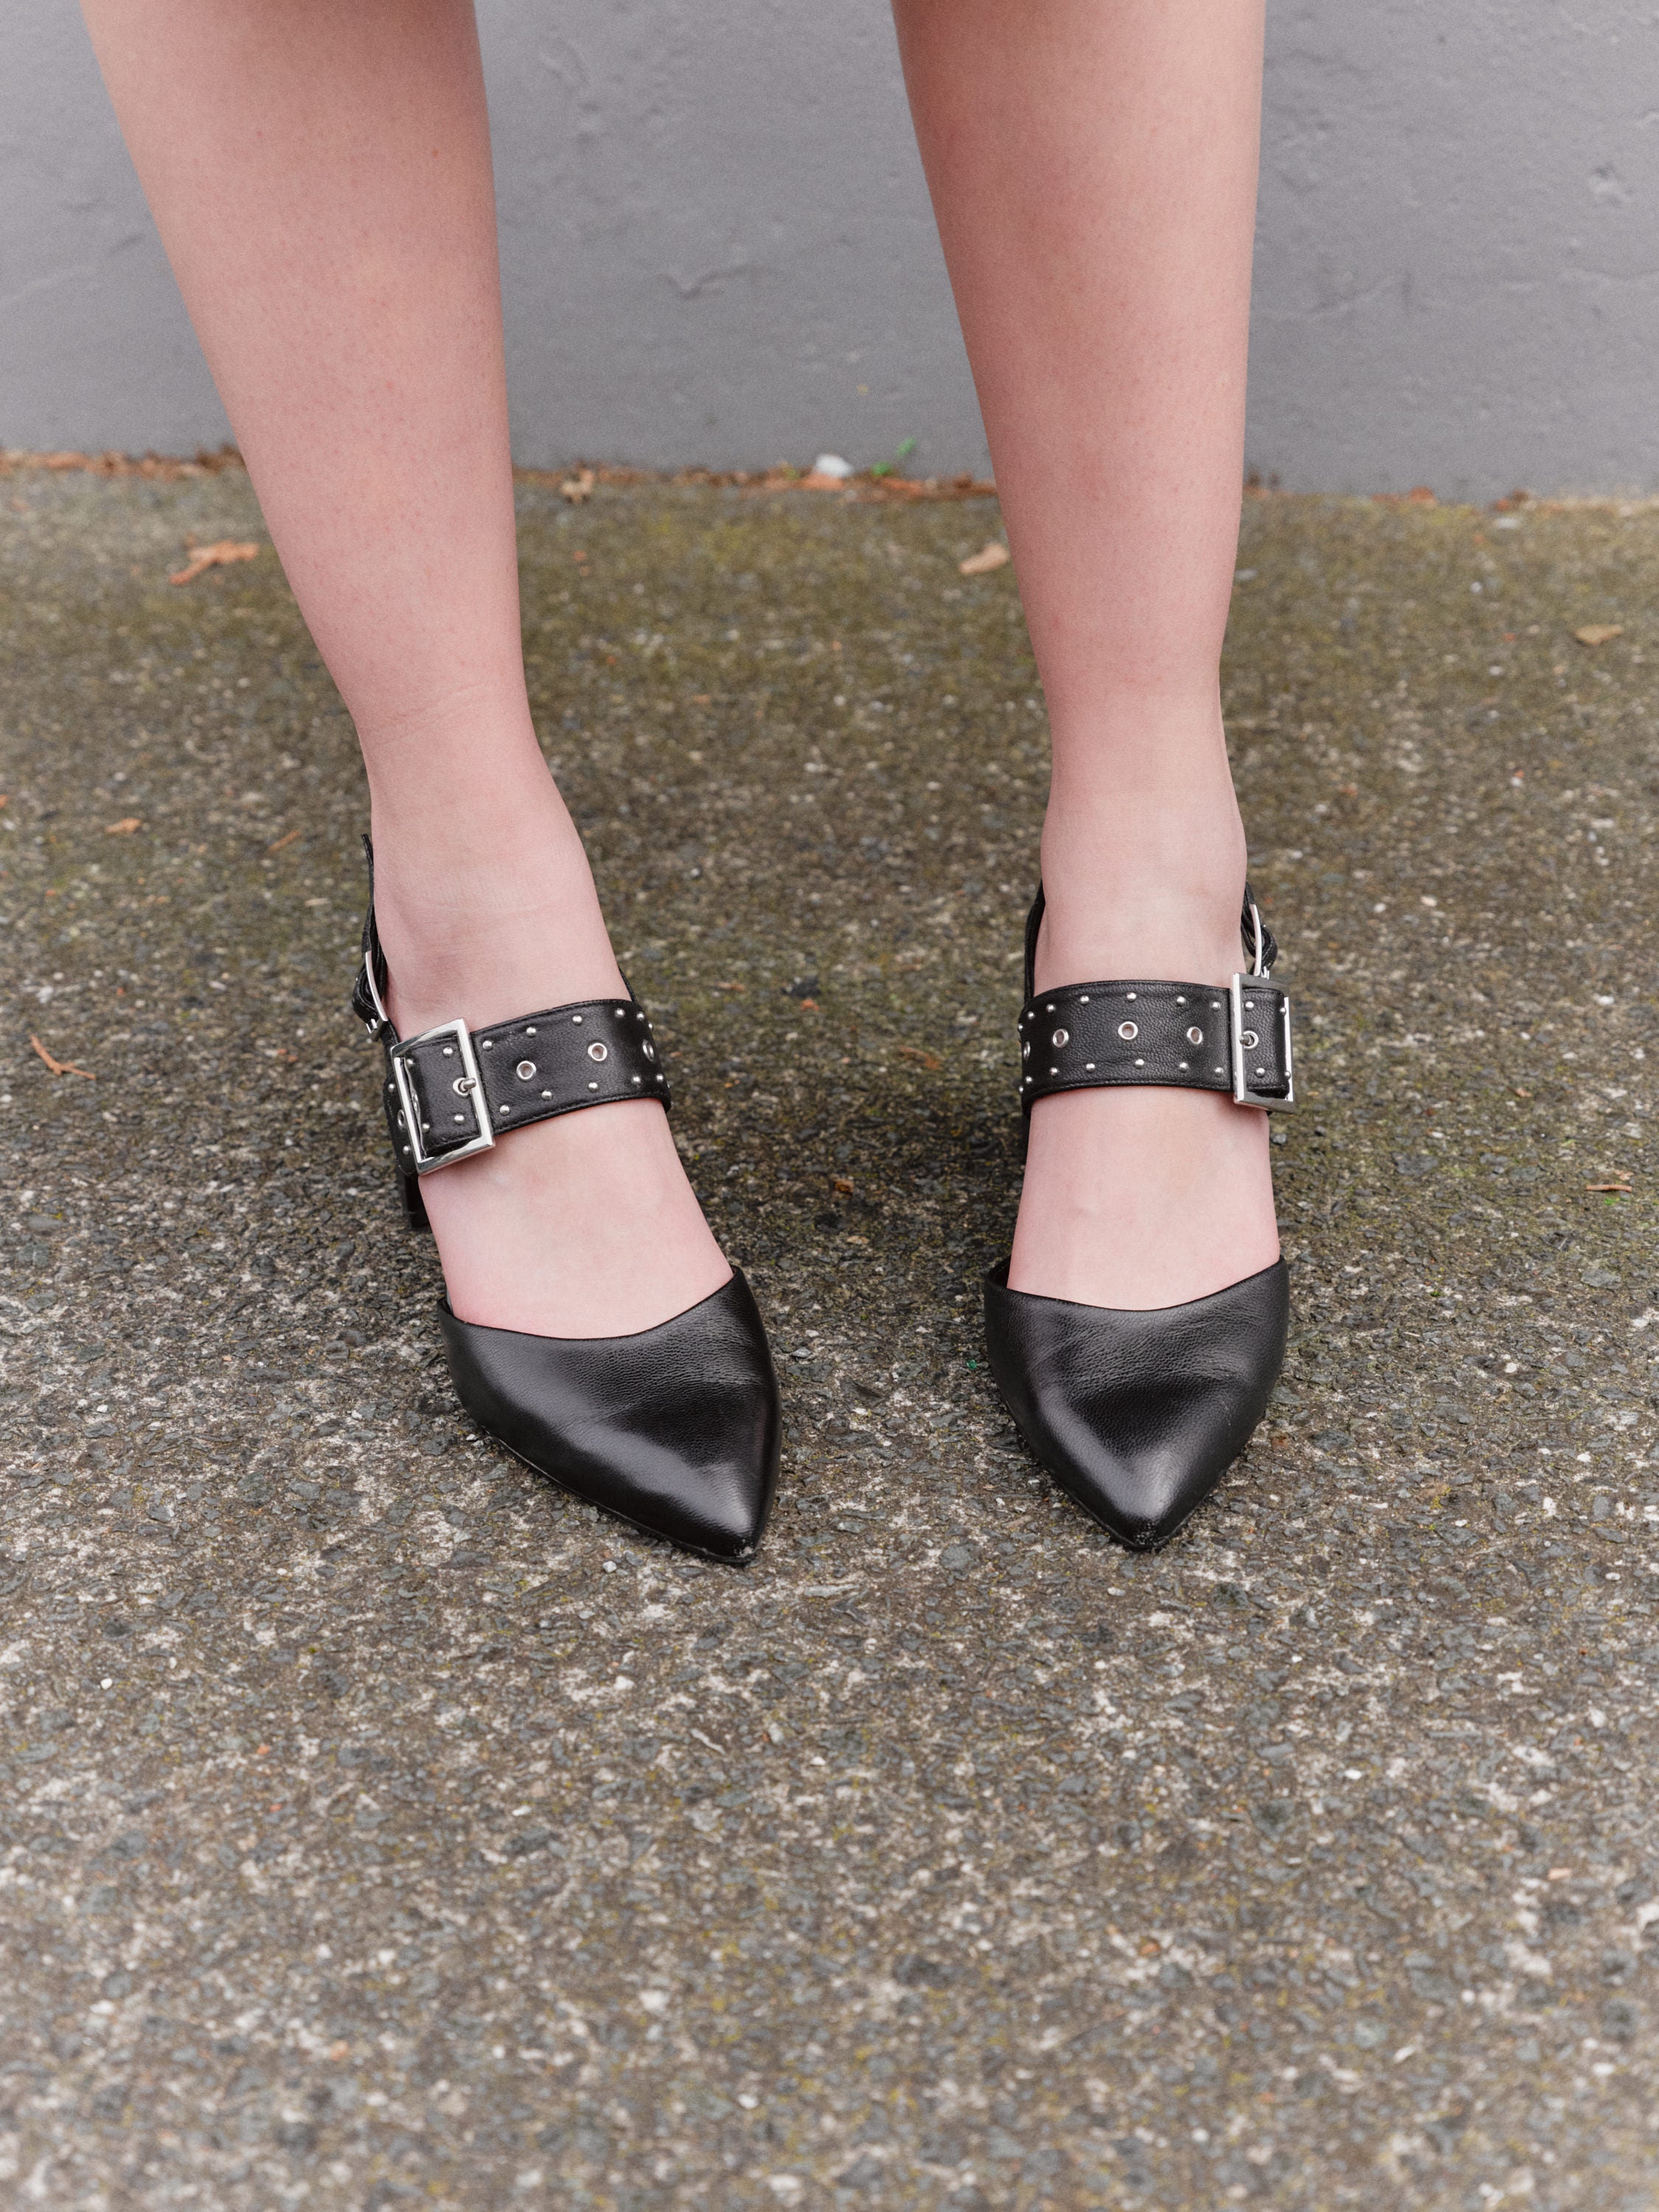 Diana Ferrari block heels